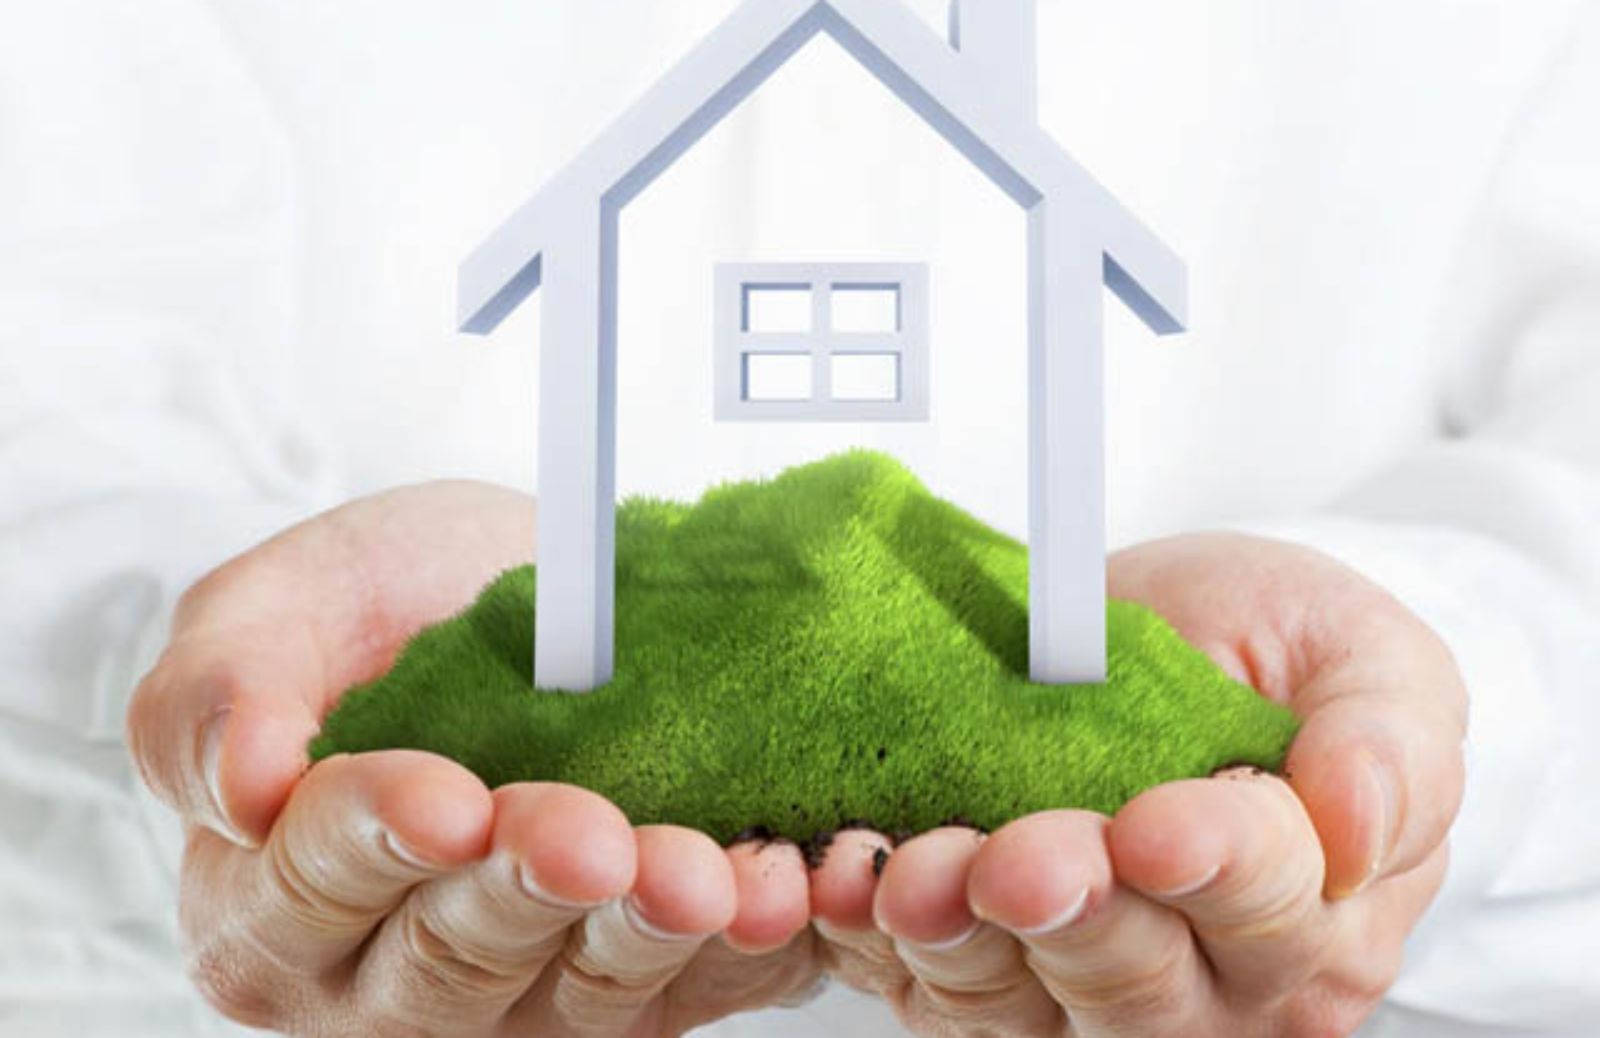  I 5 modi per rendere la casa ecologica